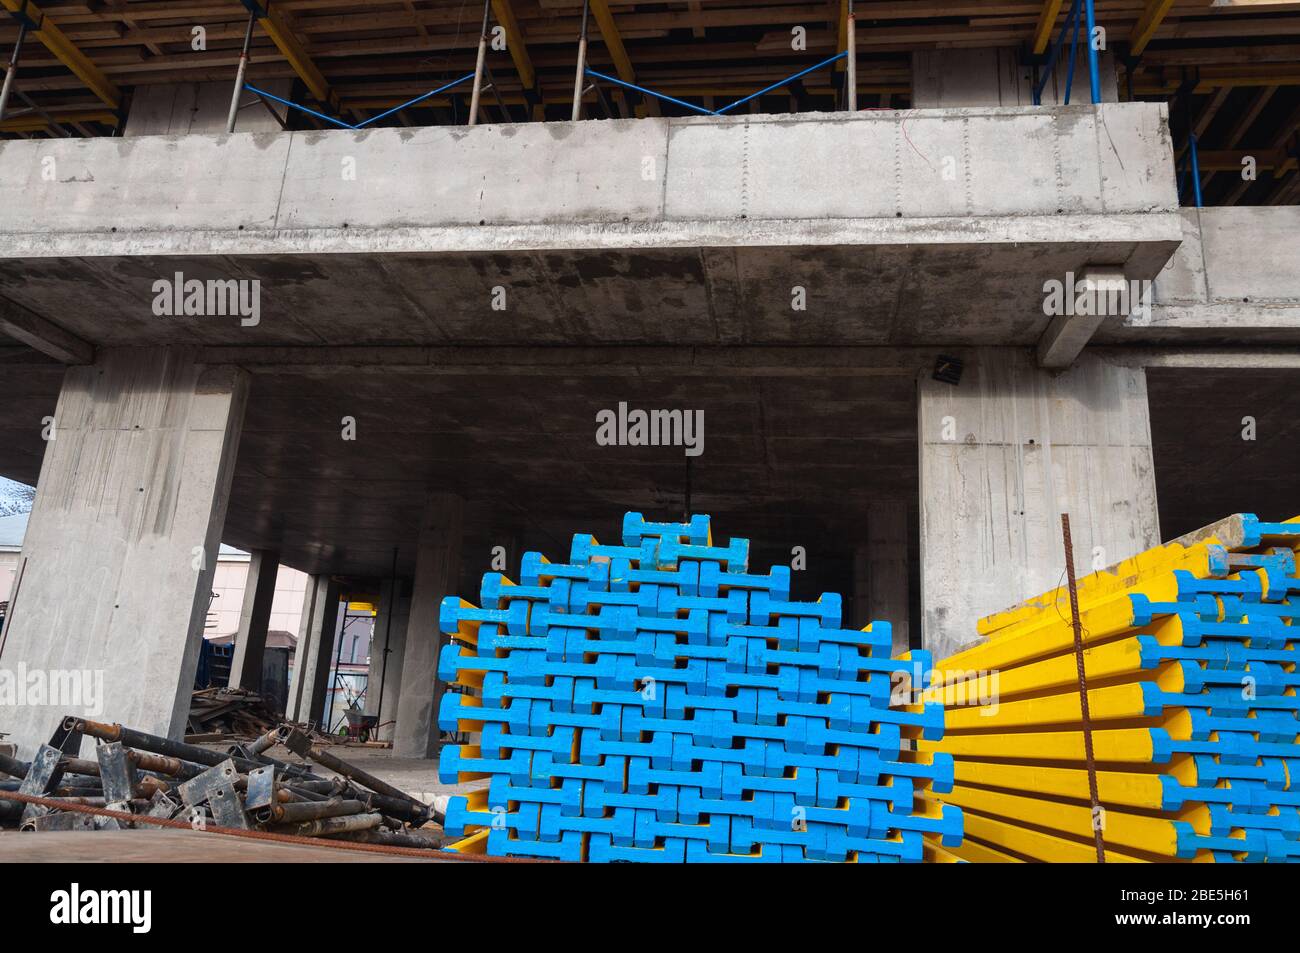 Cement form boards immagini e fotografie stock ad alta risoluzione - Alamy